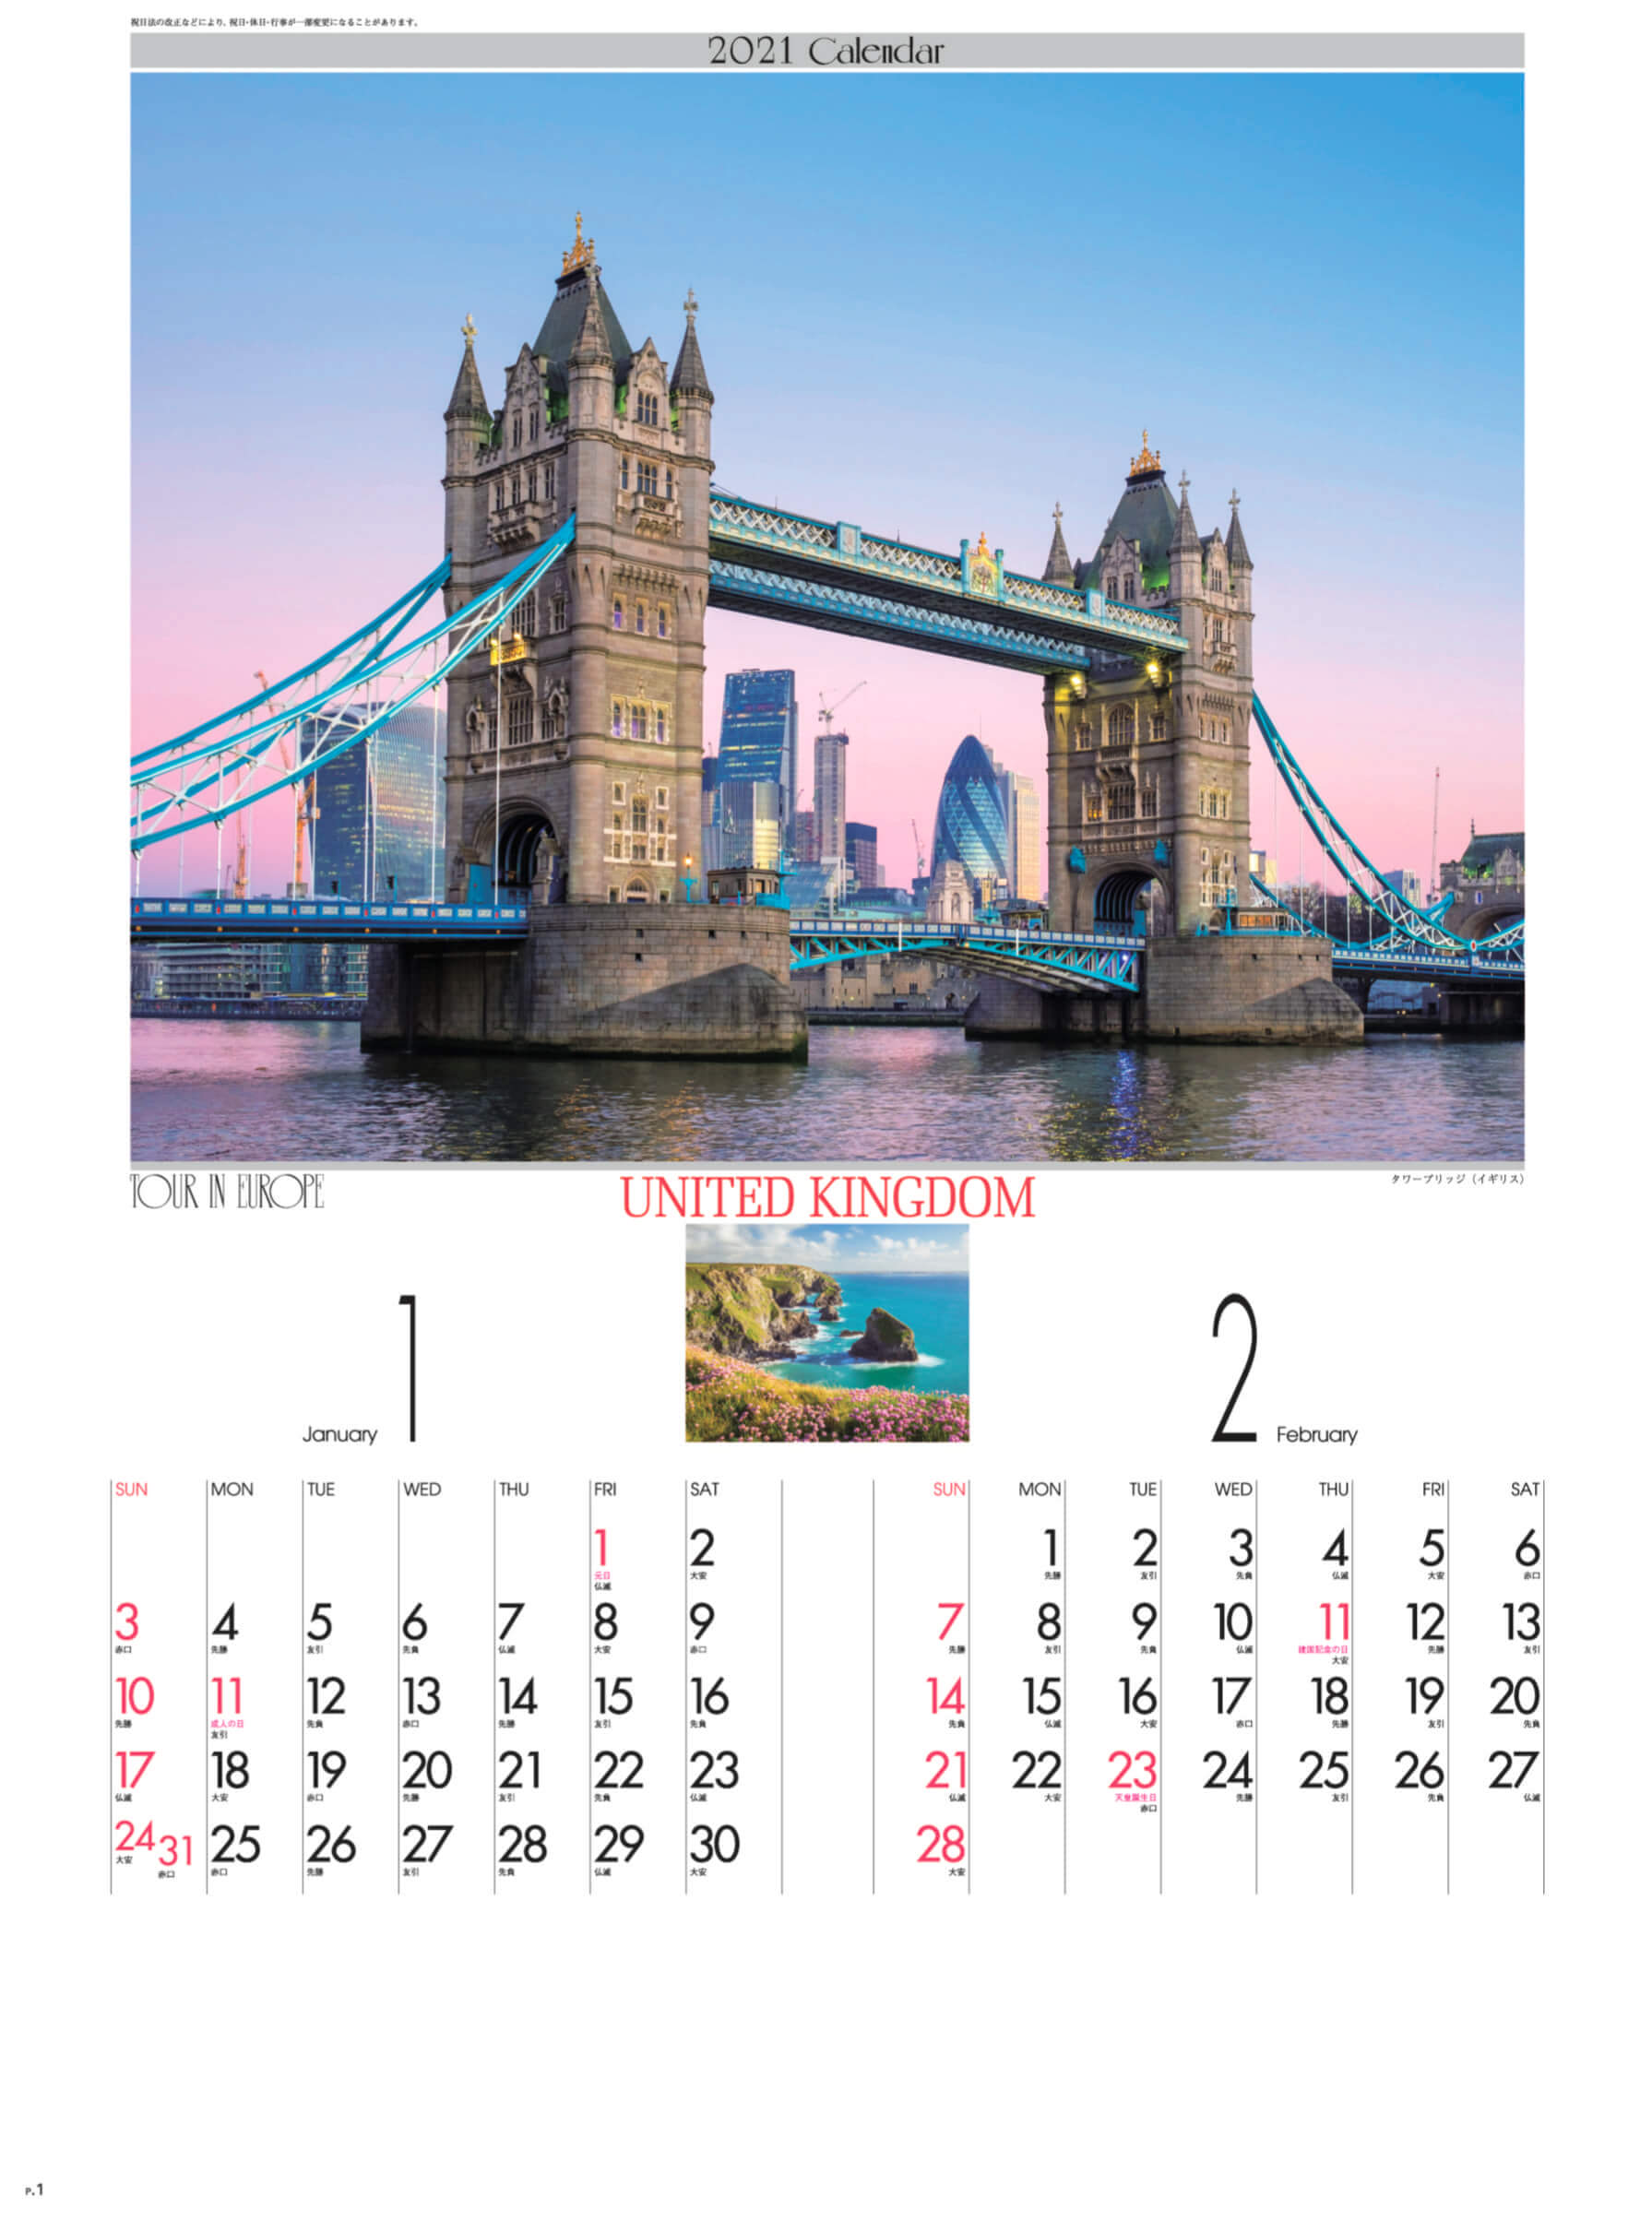 Sg 9 ヨーロッパの旅 21年カレンダー カレンダーの通販サイト E カレンダー Com 1部からでも送料無料でお届け